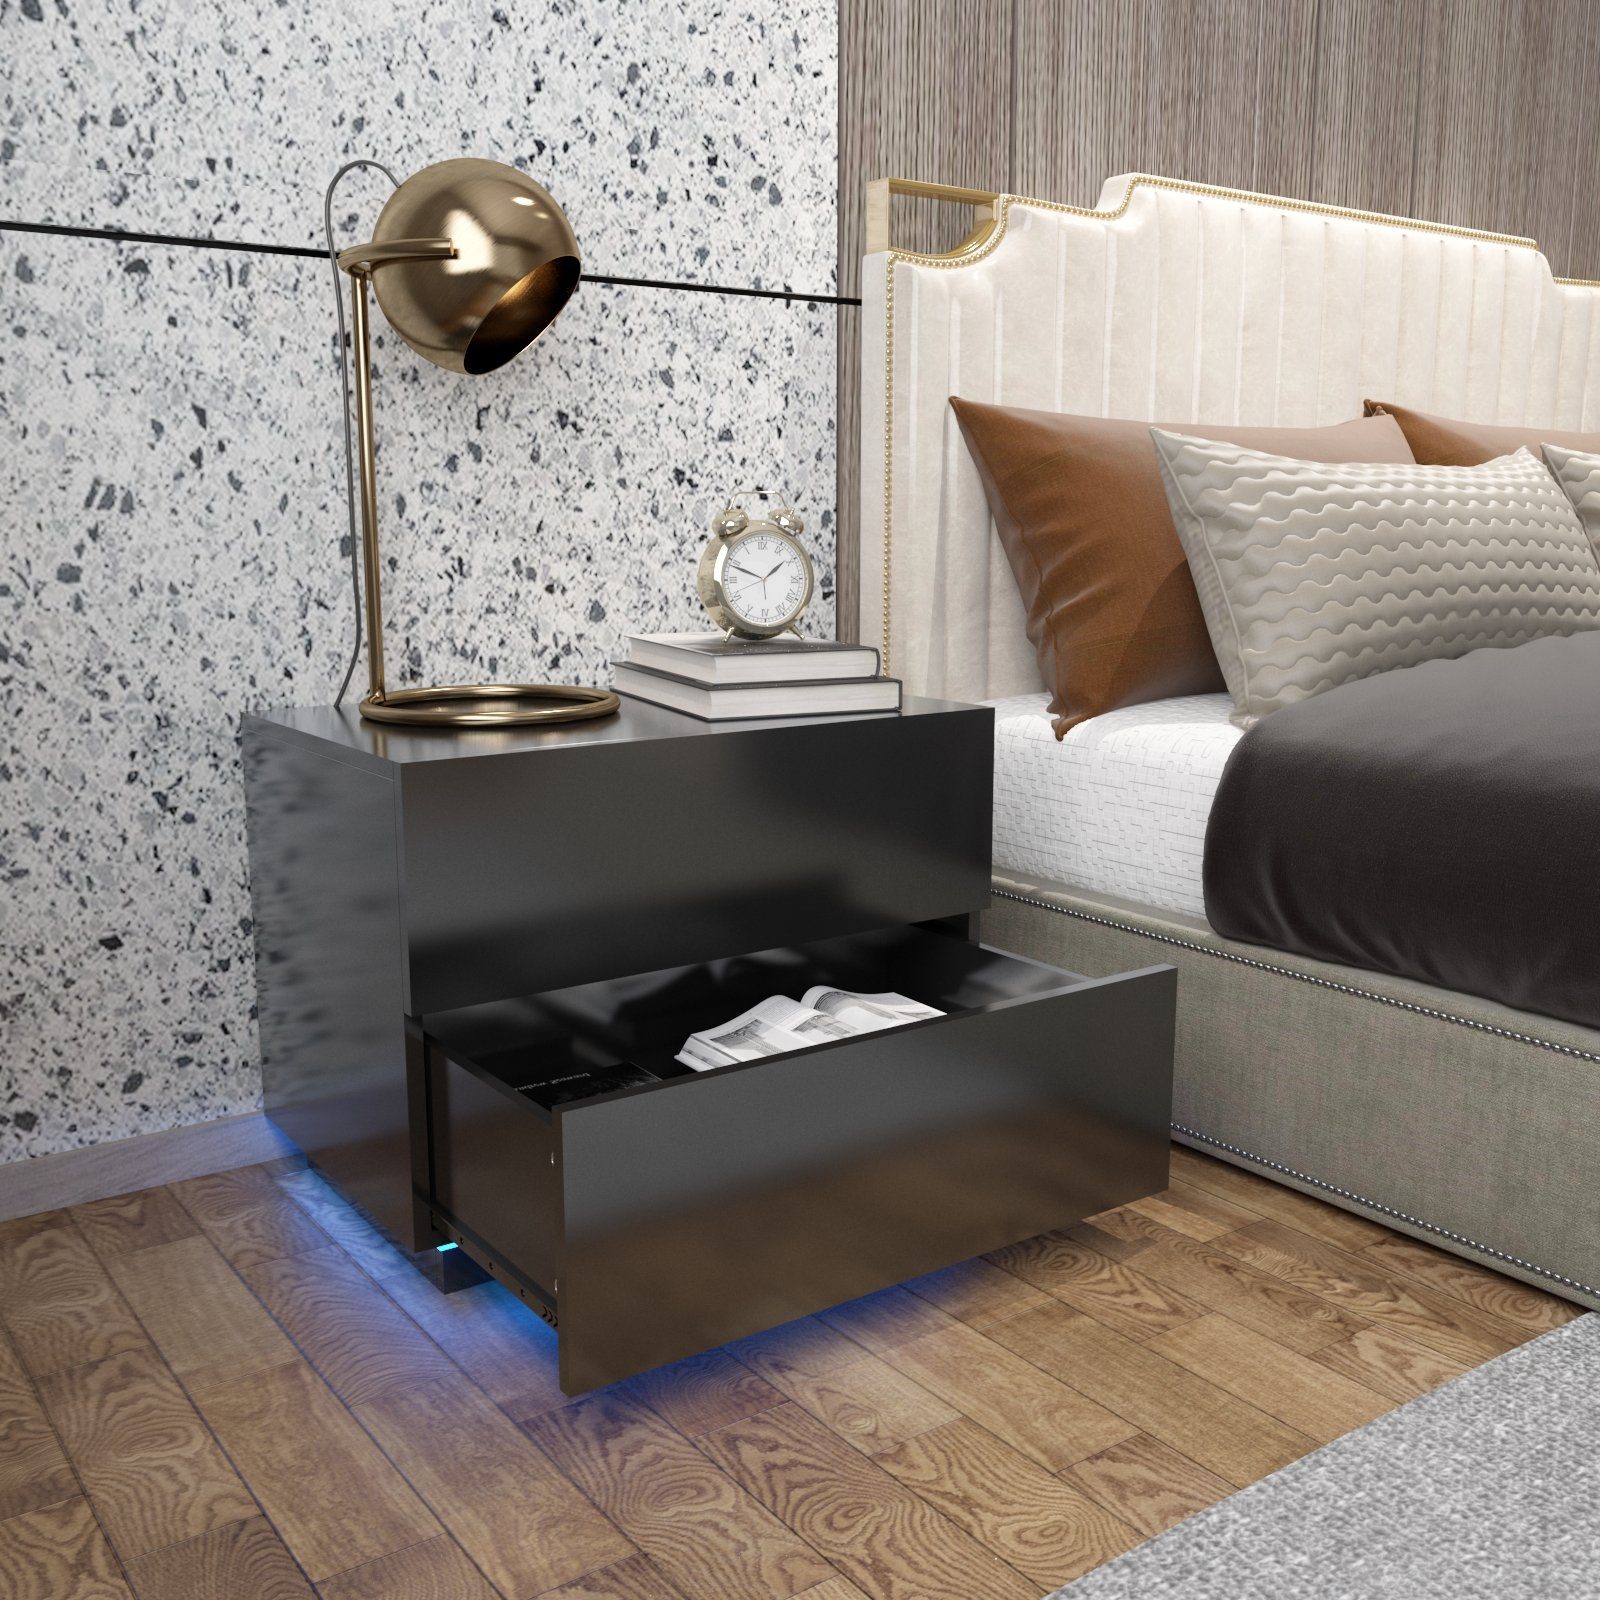 Nachttisch schwarz mit Nachtkommode, 60x39x45cm USB-LED-Lampe, Mondeer LED Hochglanz-Nachttisch